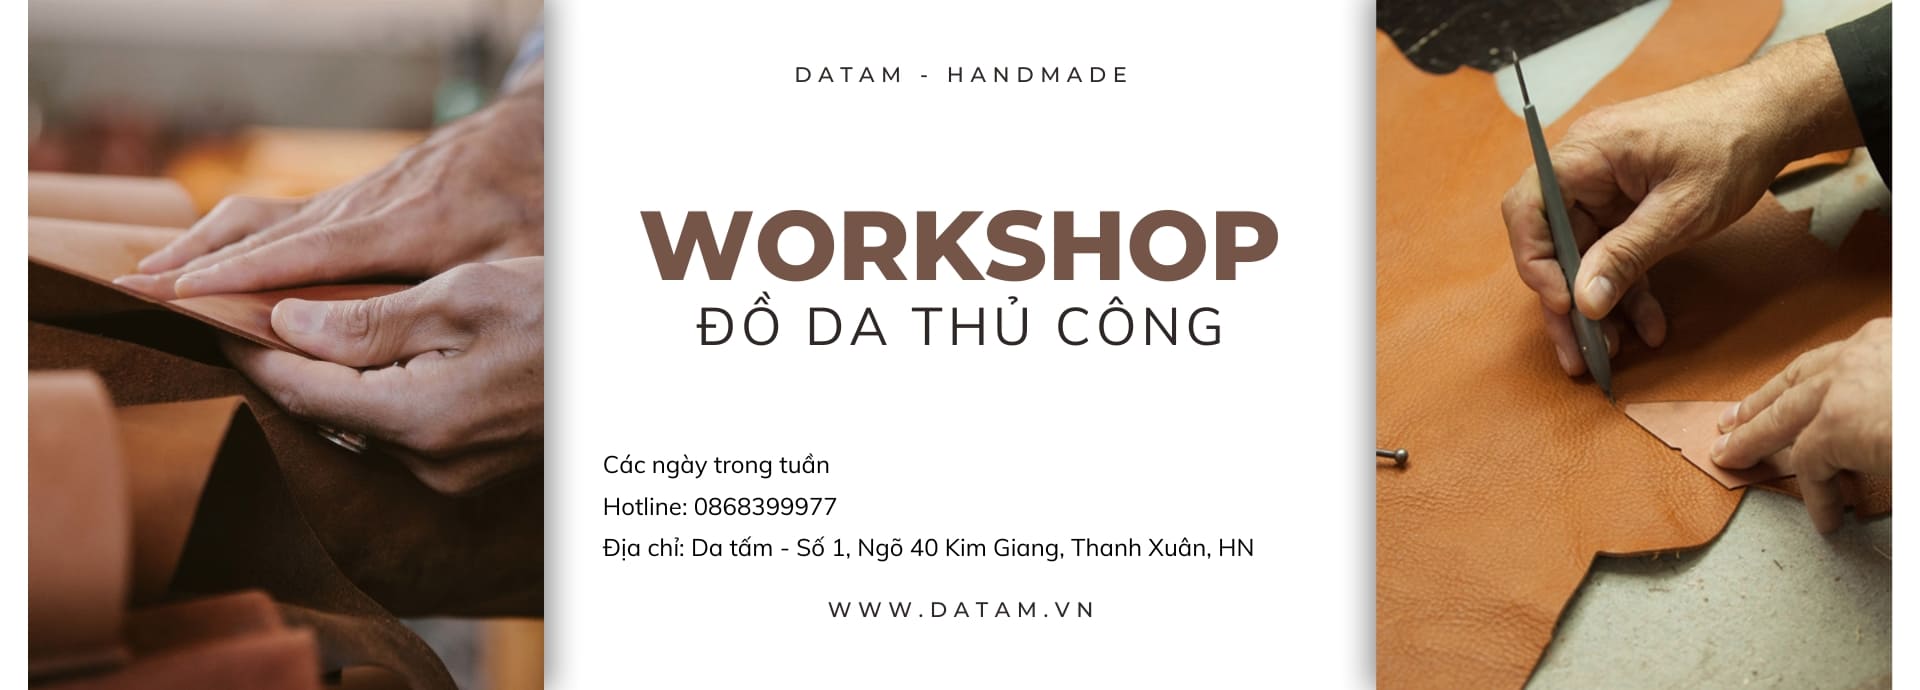 Trải nghiệm workshop làm đồ da thủ công tại Hà Nội với Da Tấm